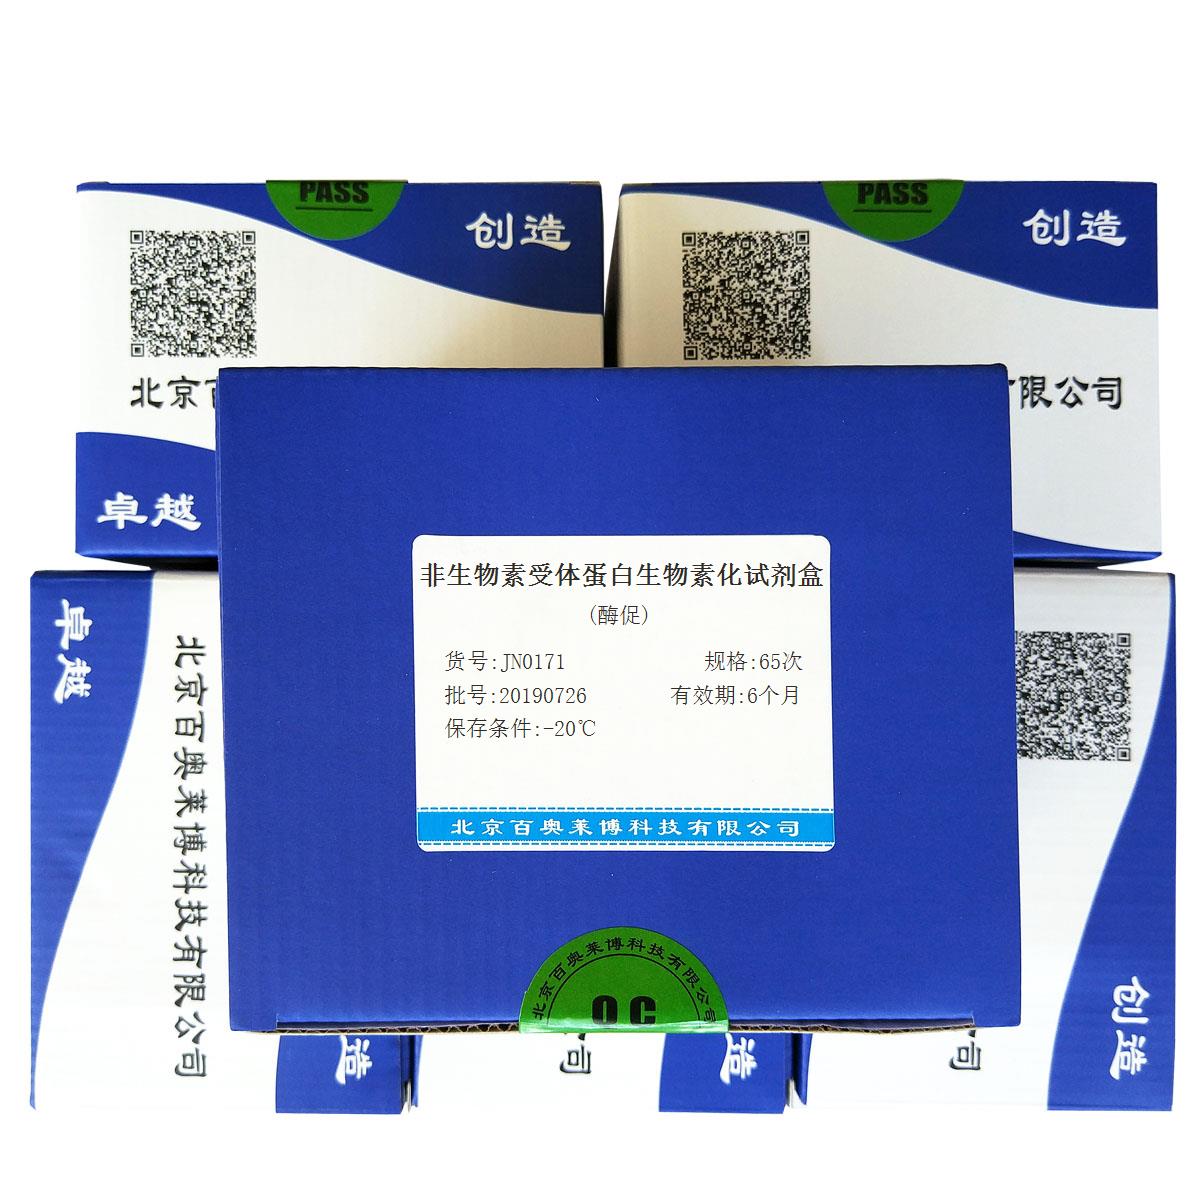 非生物素受体蛋白生物素化试剂盒(酶促)北京价格